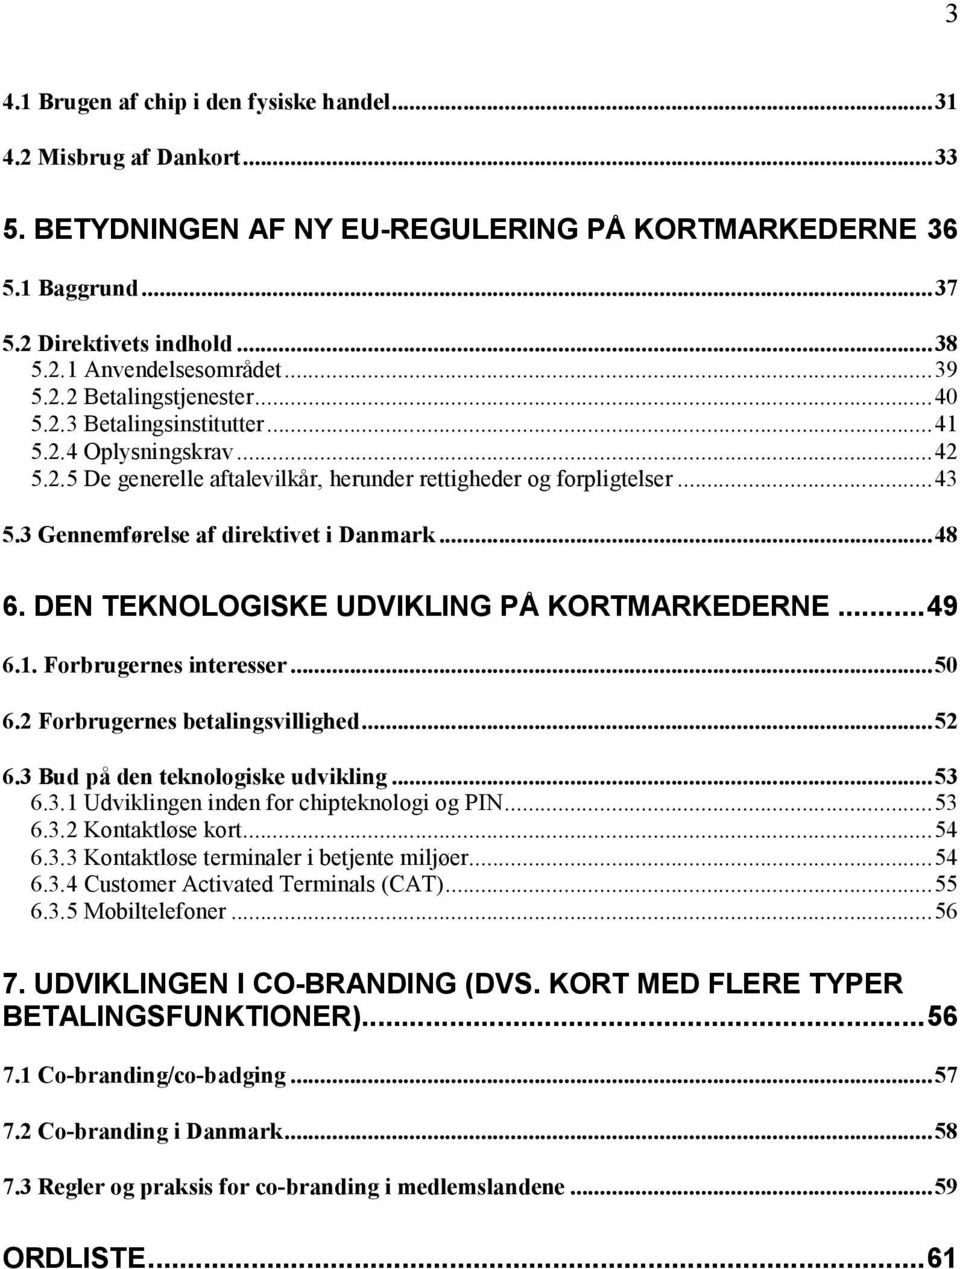 3 Gennemførelse af direktivet i Danmark...48 6. DEN TEKNOLOGISKE UDVIKLING PÅ KORTMARKEDERNE...49 6.1. Forbrugernes interesser...50 6.2 Forbrugernes betalingsvillighed...52 6.